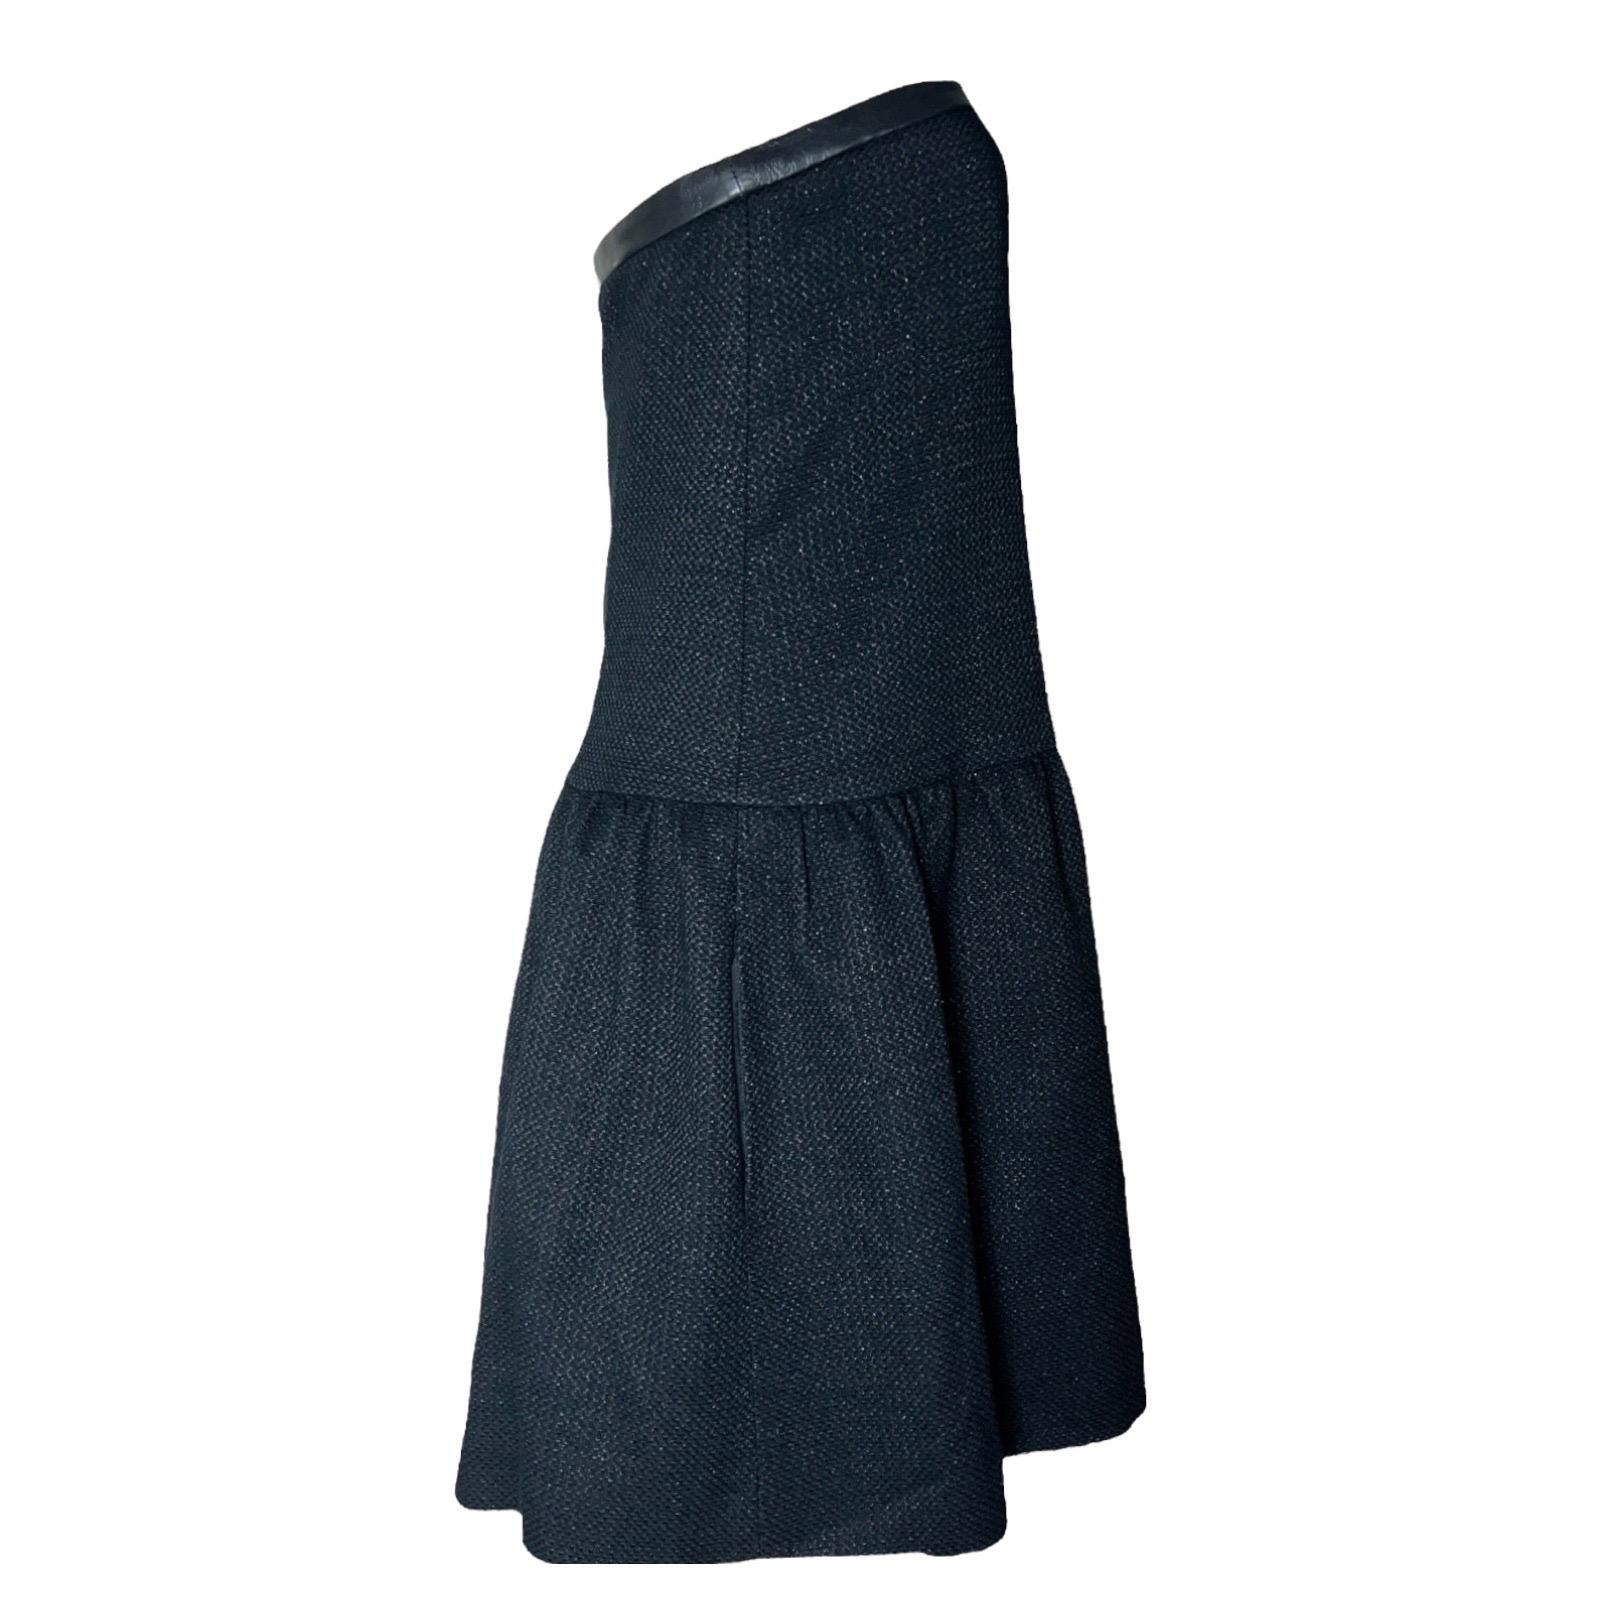 Eine moderne, aber klassische Version des berühmten kleinen schwarzen Kleides von Chanel
Trägerloses Kleid 
Wie auf der Laufstegshow zu sehen
Bei diesem Kleid handelt es sich um die RTW-Version ohne Stickerei in einer dunklen Farbe, die dem